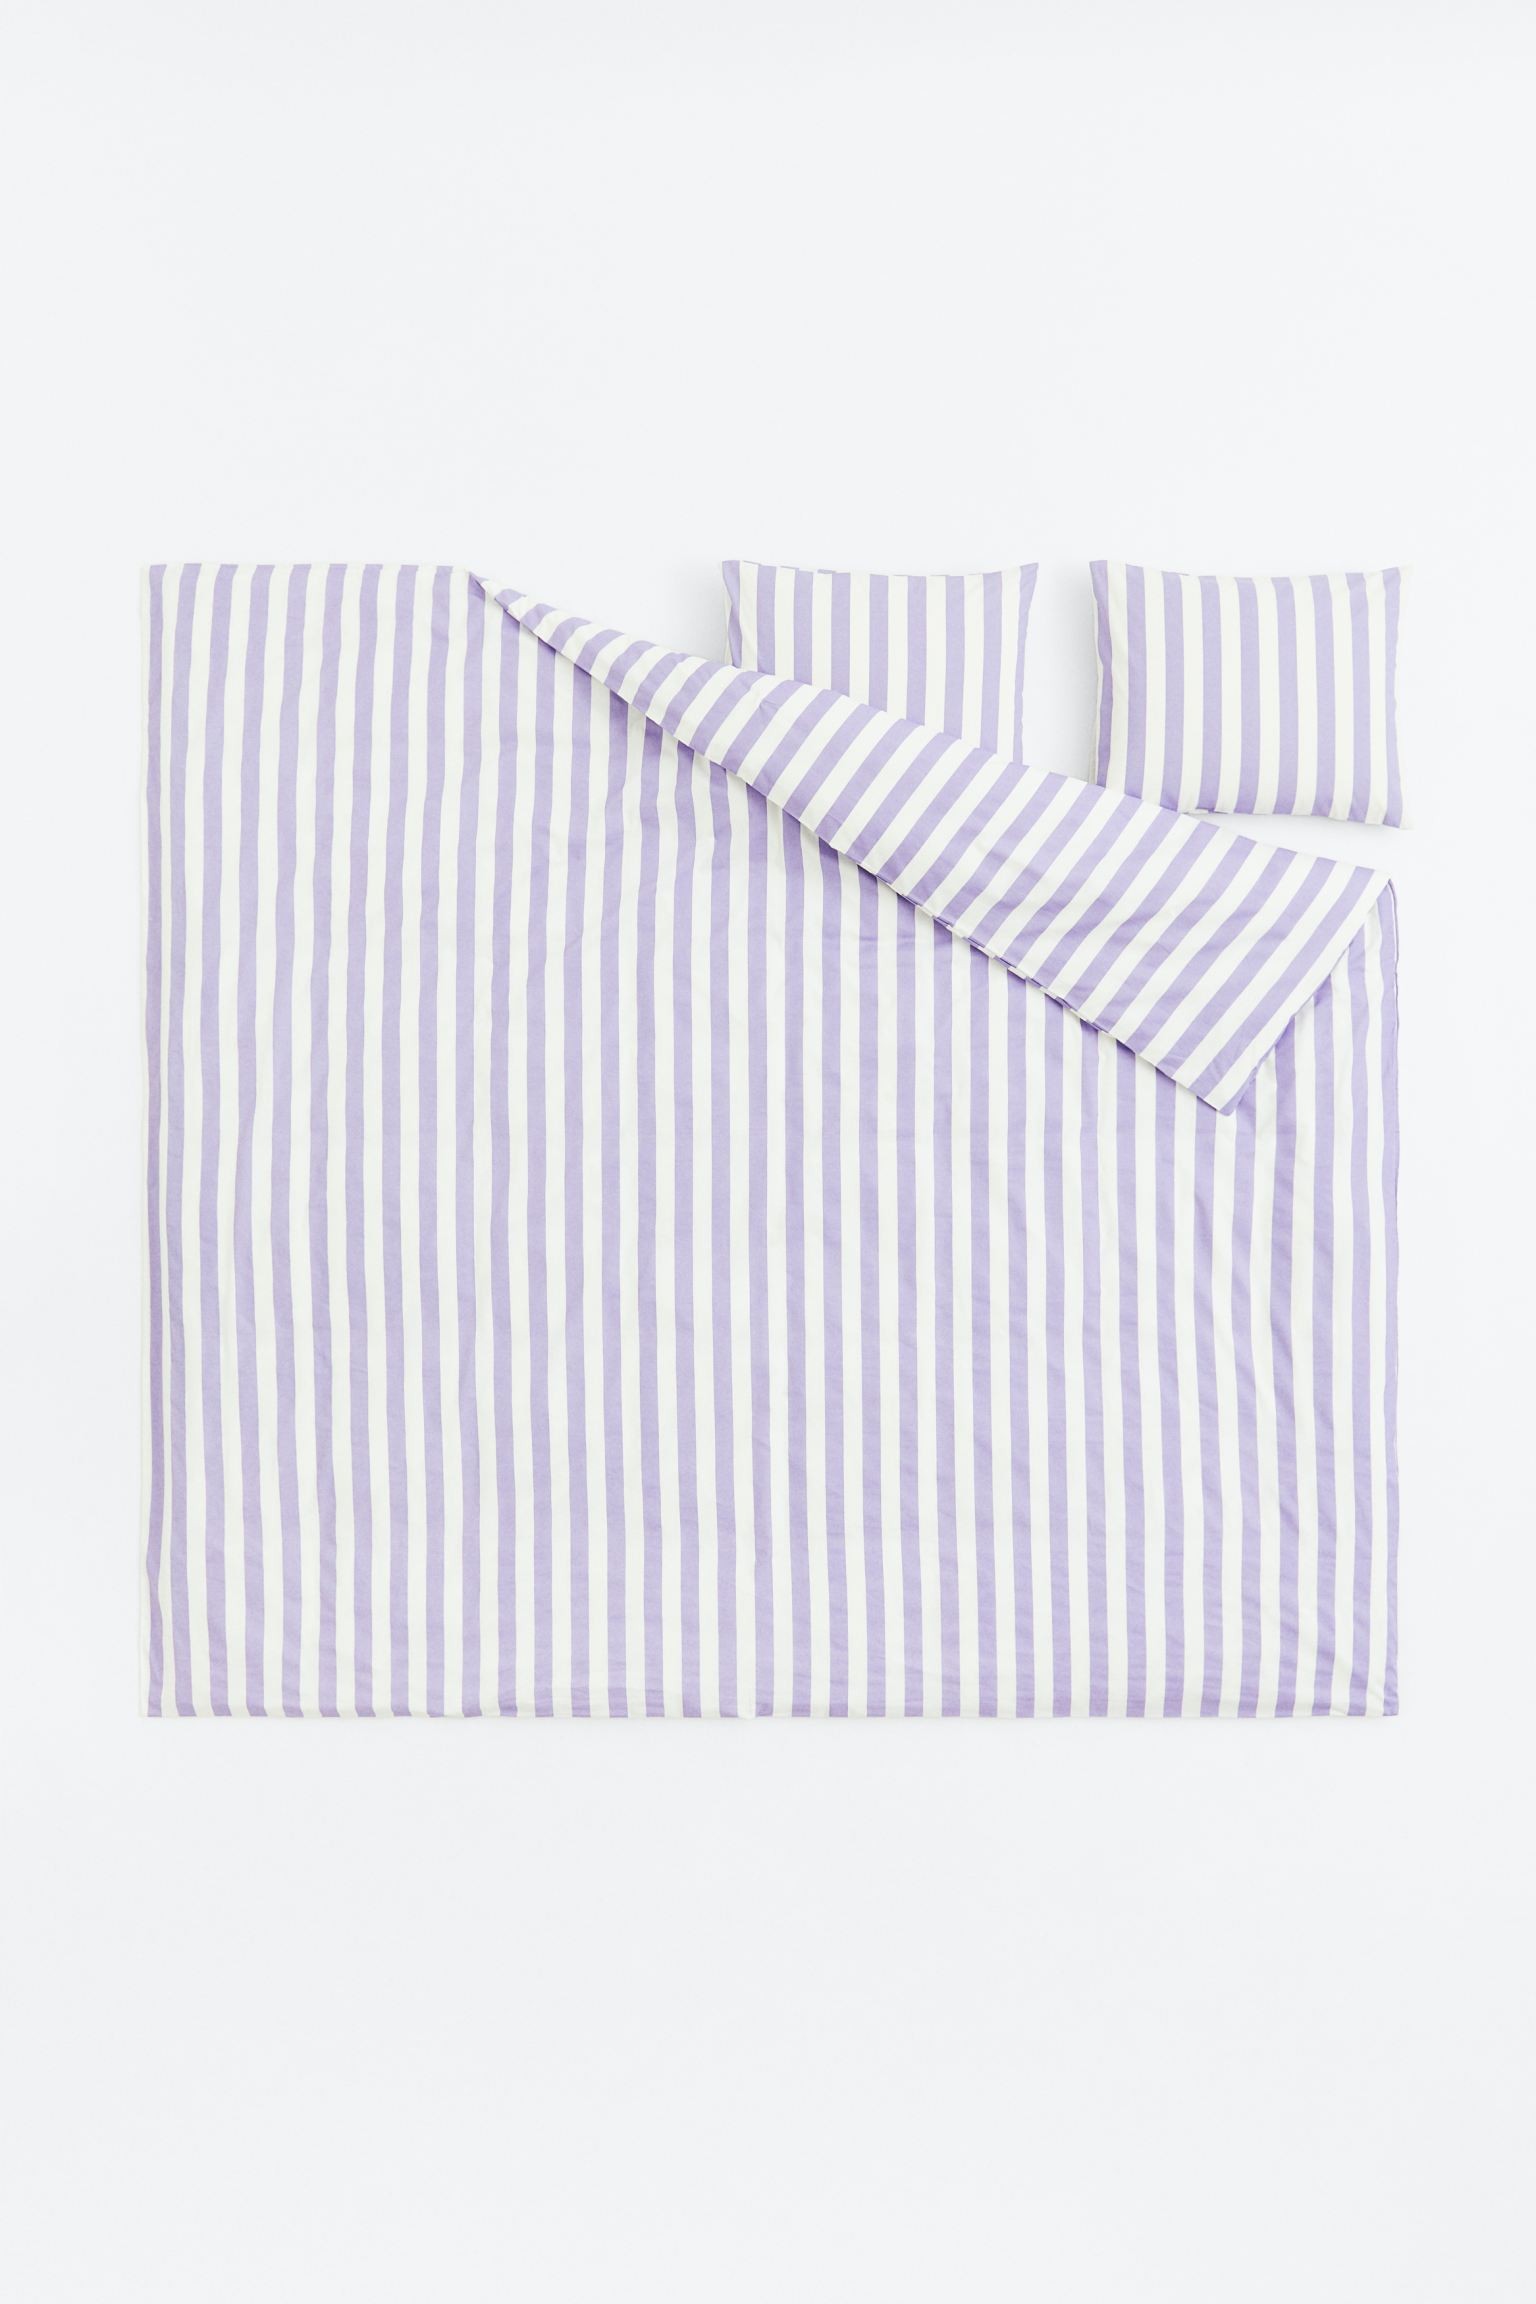 Двуспальное постельное белье в полоски, Светло-фиолетовый/Полосатый, 200x200 + 50x60